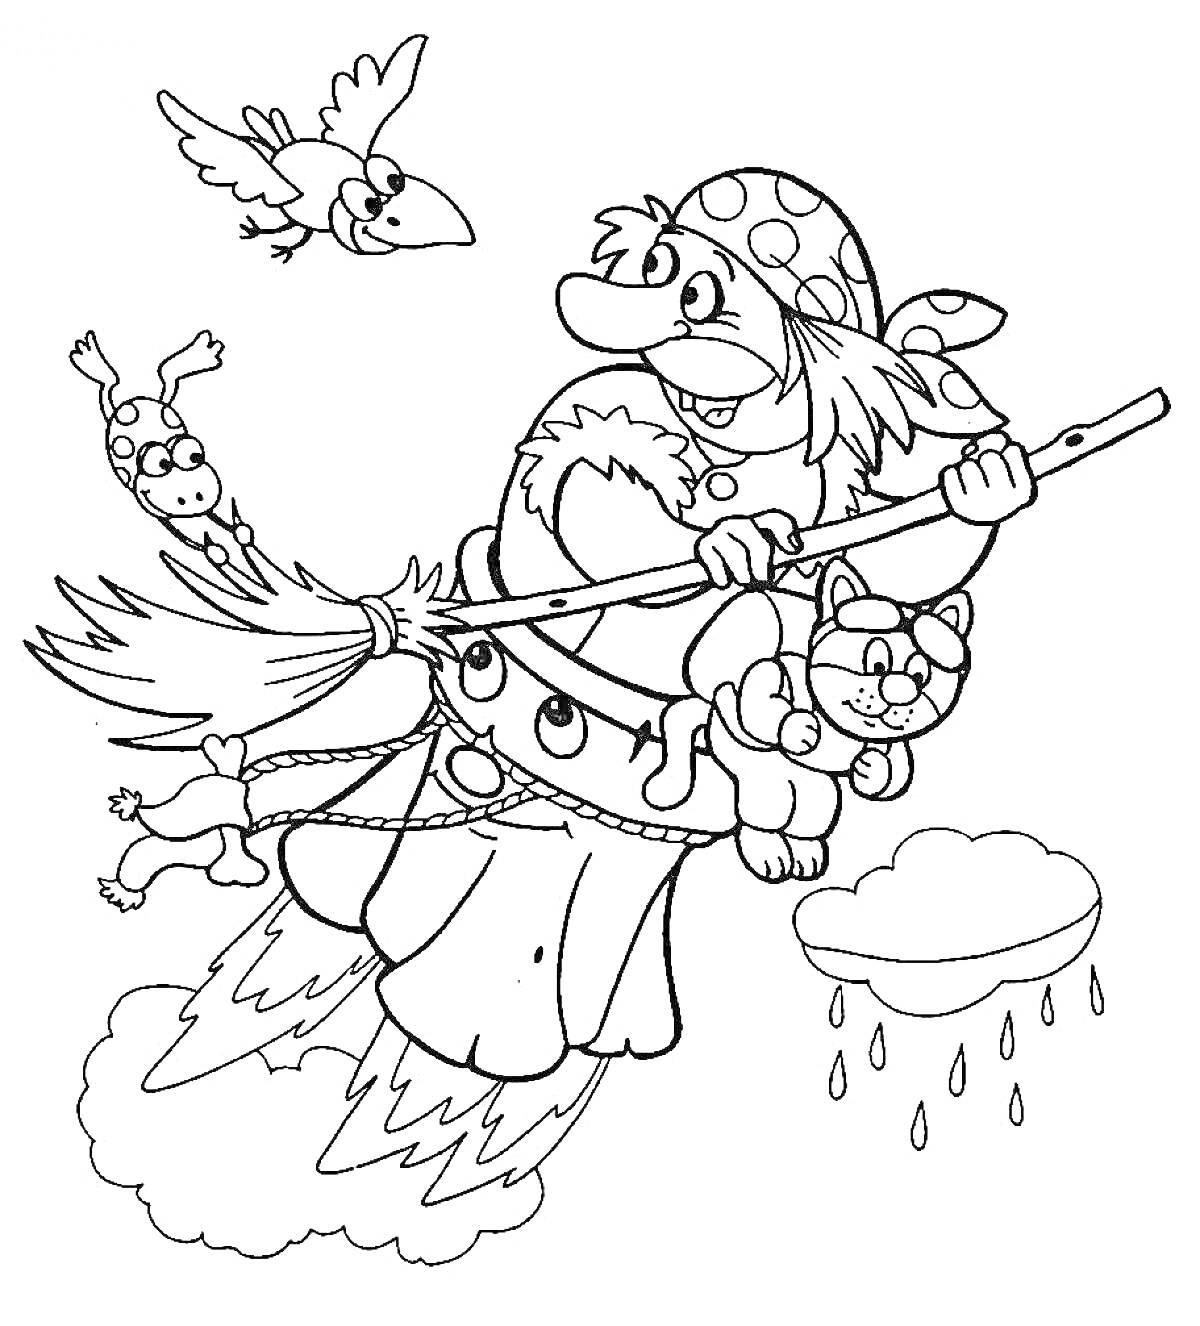 Раскраска Волшебница с метлой, летящая вместе с котом, мышью, птицей и лягушкой на фоне облаков и капель дождя